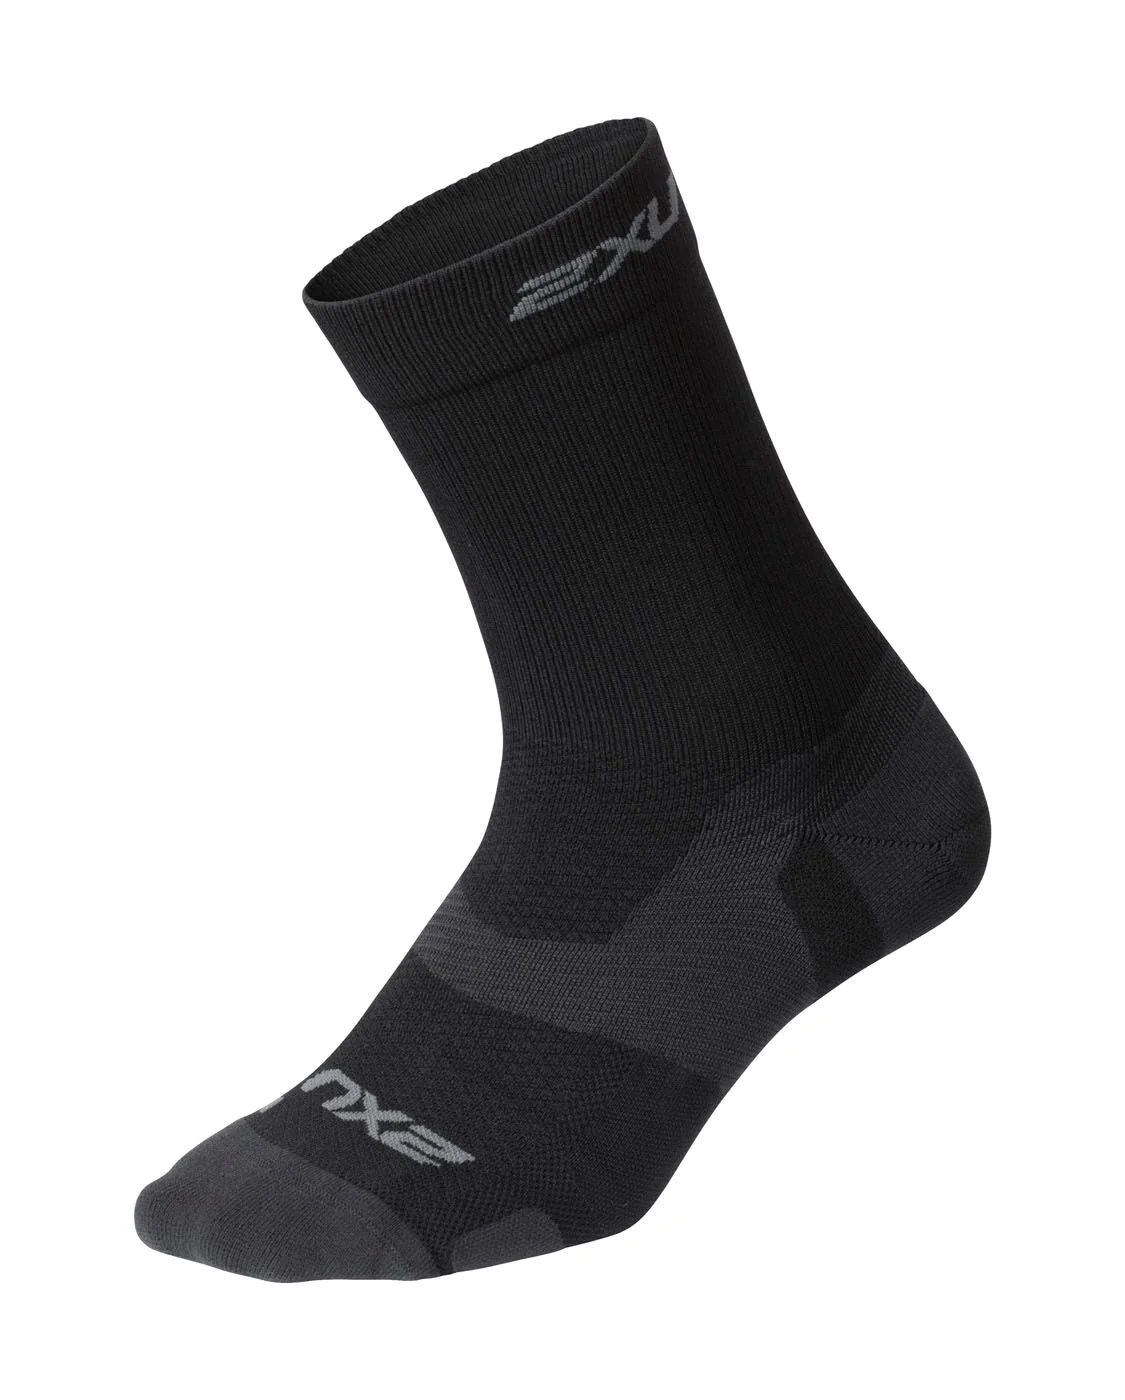 2XU Vectr Light Cushion Crew Socks | Black Titanium